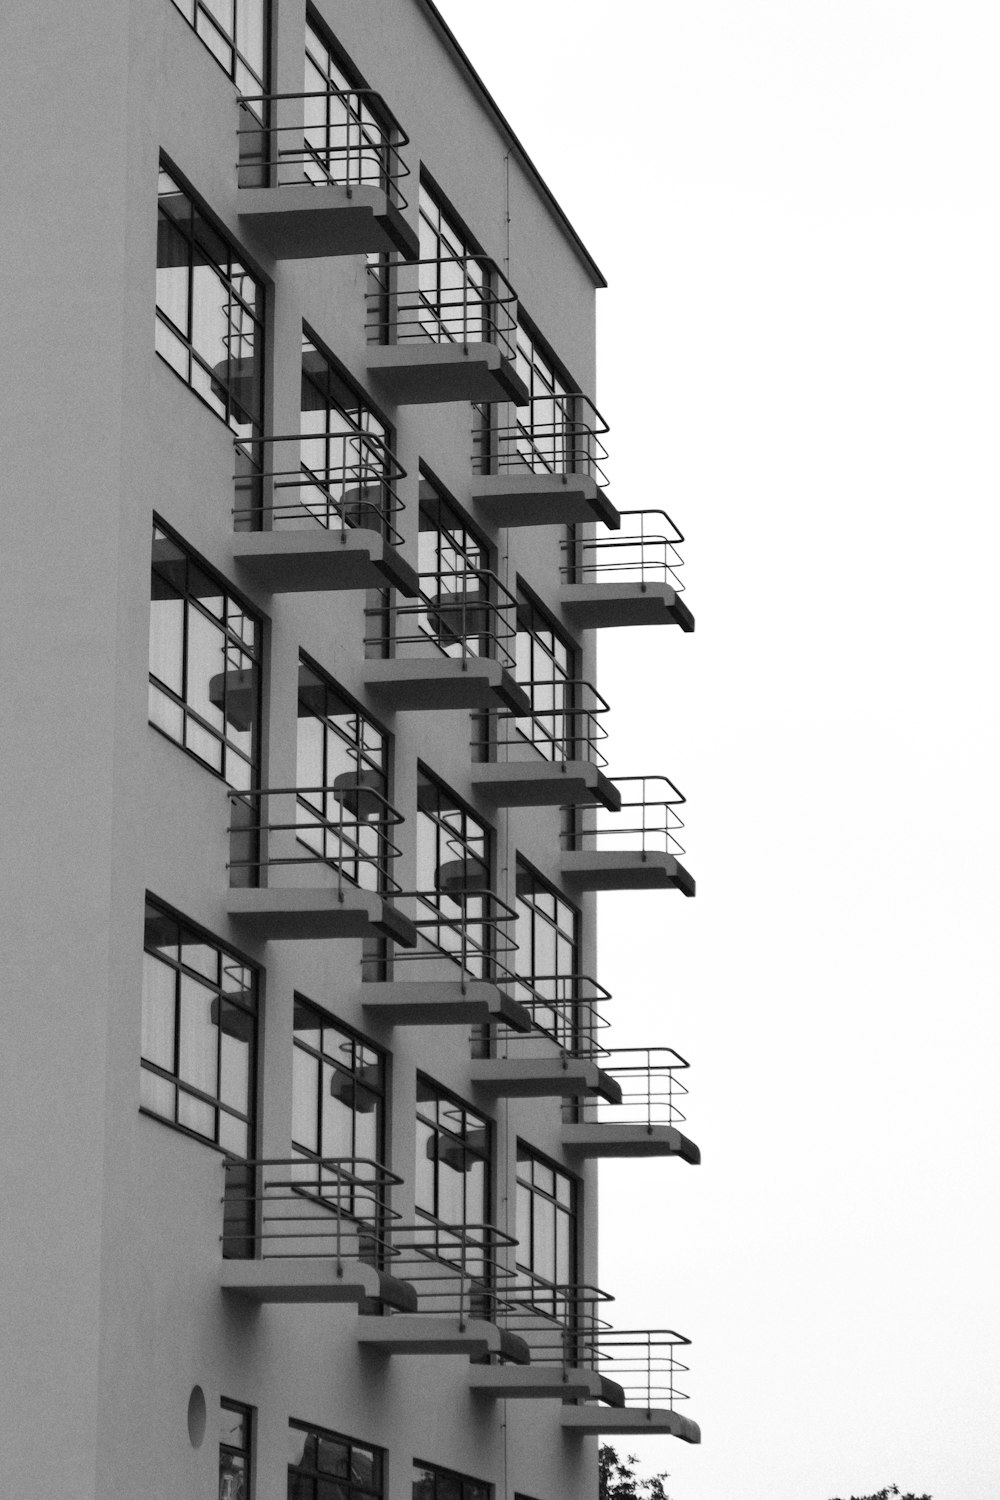 Photo en niveaux de gris d’un bâtiment en béton